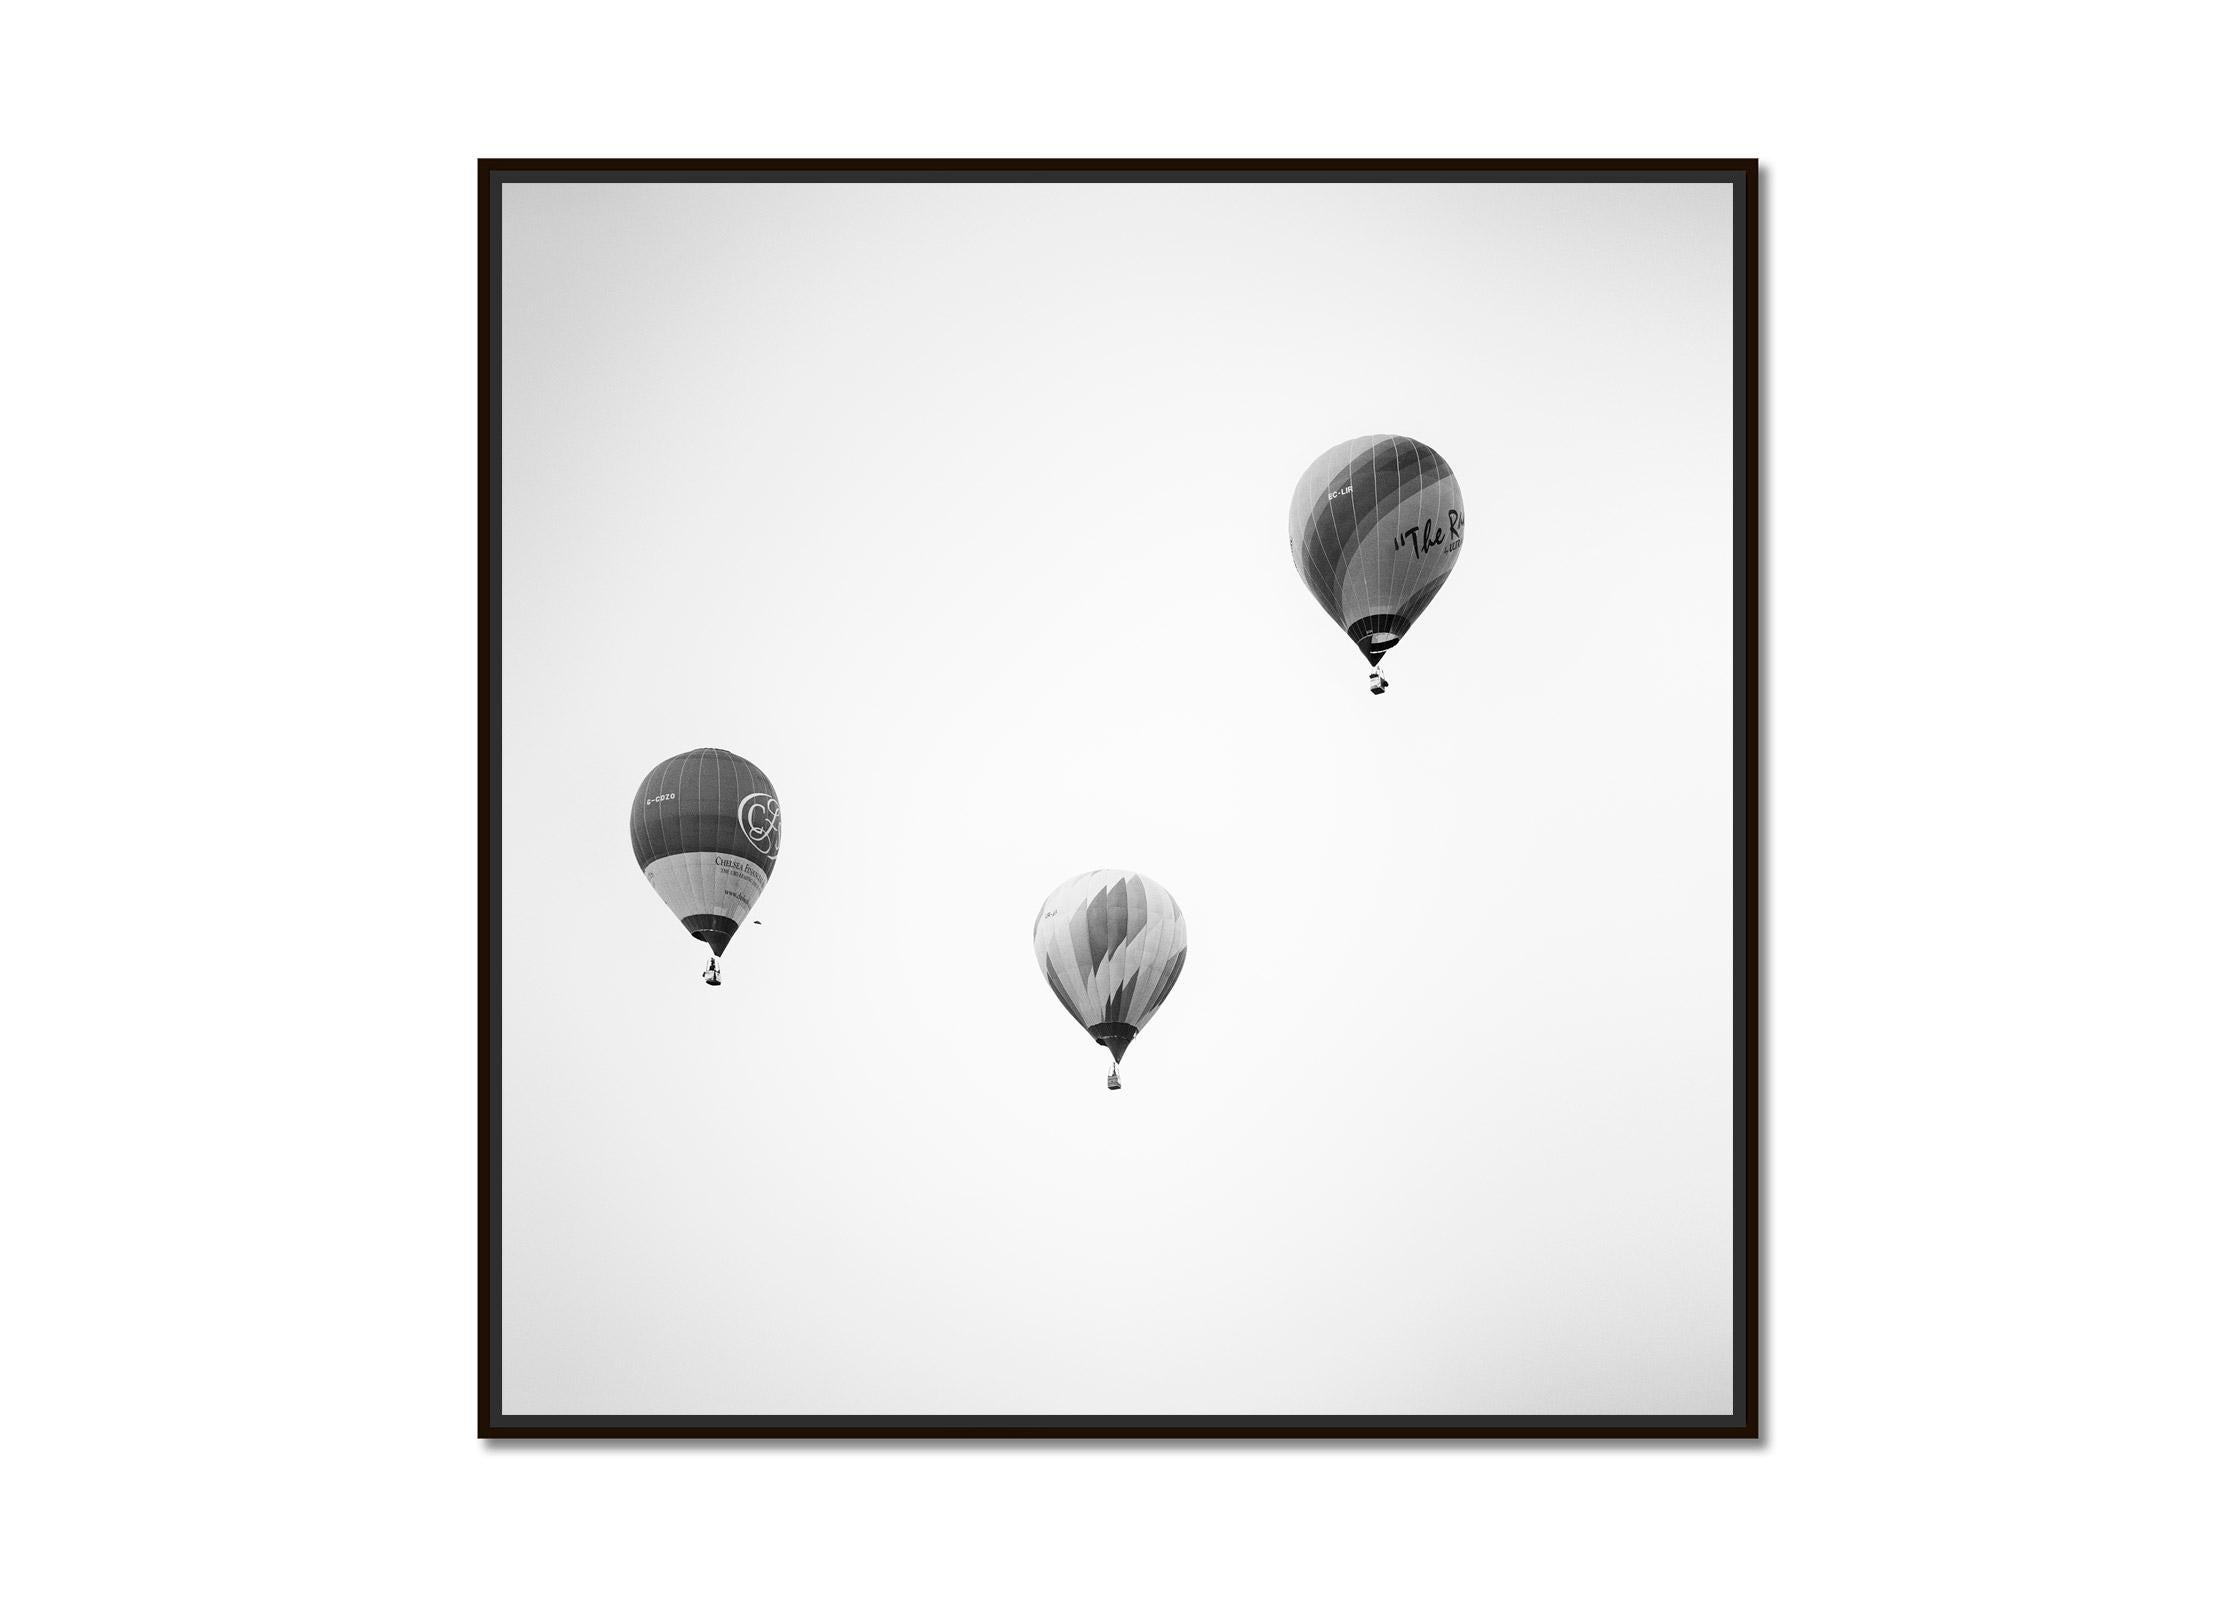 Hot Air Ballon, Championship, minimalistische Schwarz-Weiß-Fotografie, Landschaft – Photograph von Gerald Berghammer